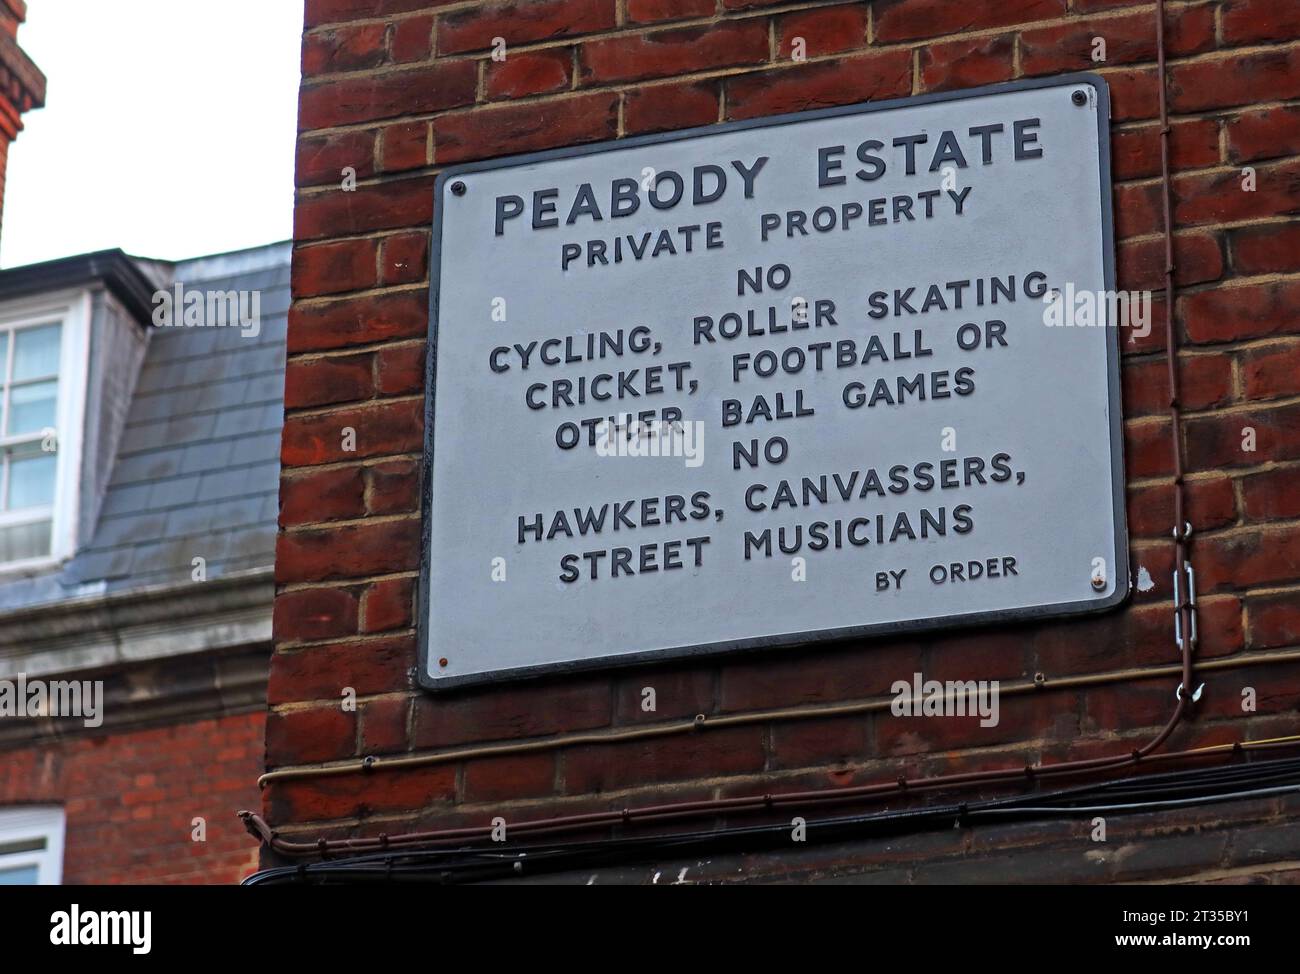 Règles de la propriété du Peabody Trust, Horseferry RO, Westminster, Londres, Angleterre, ROYAUME-UNI, SW1P 2EH Banque D'Images